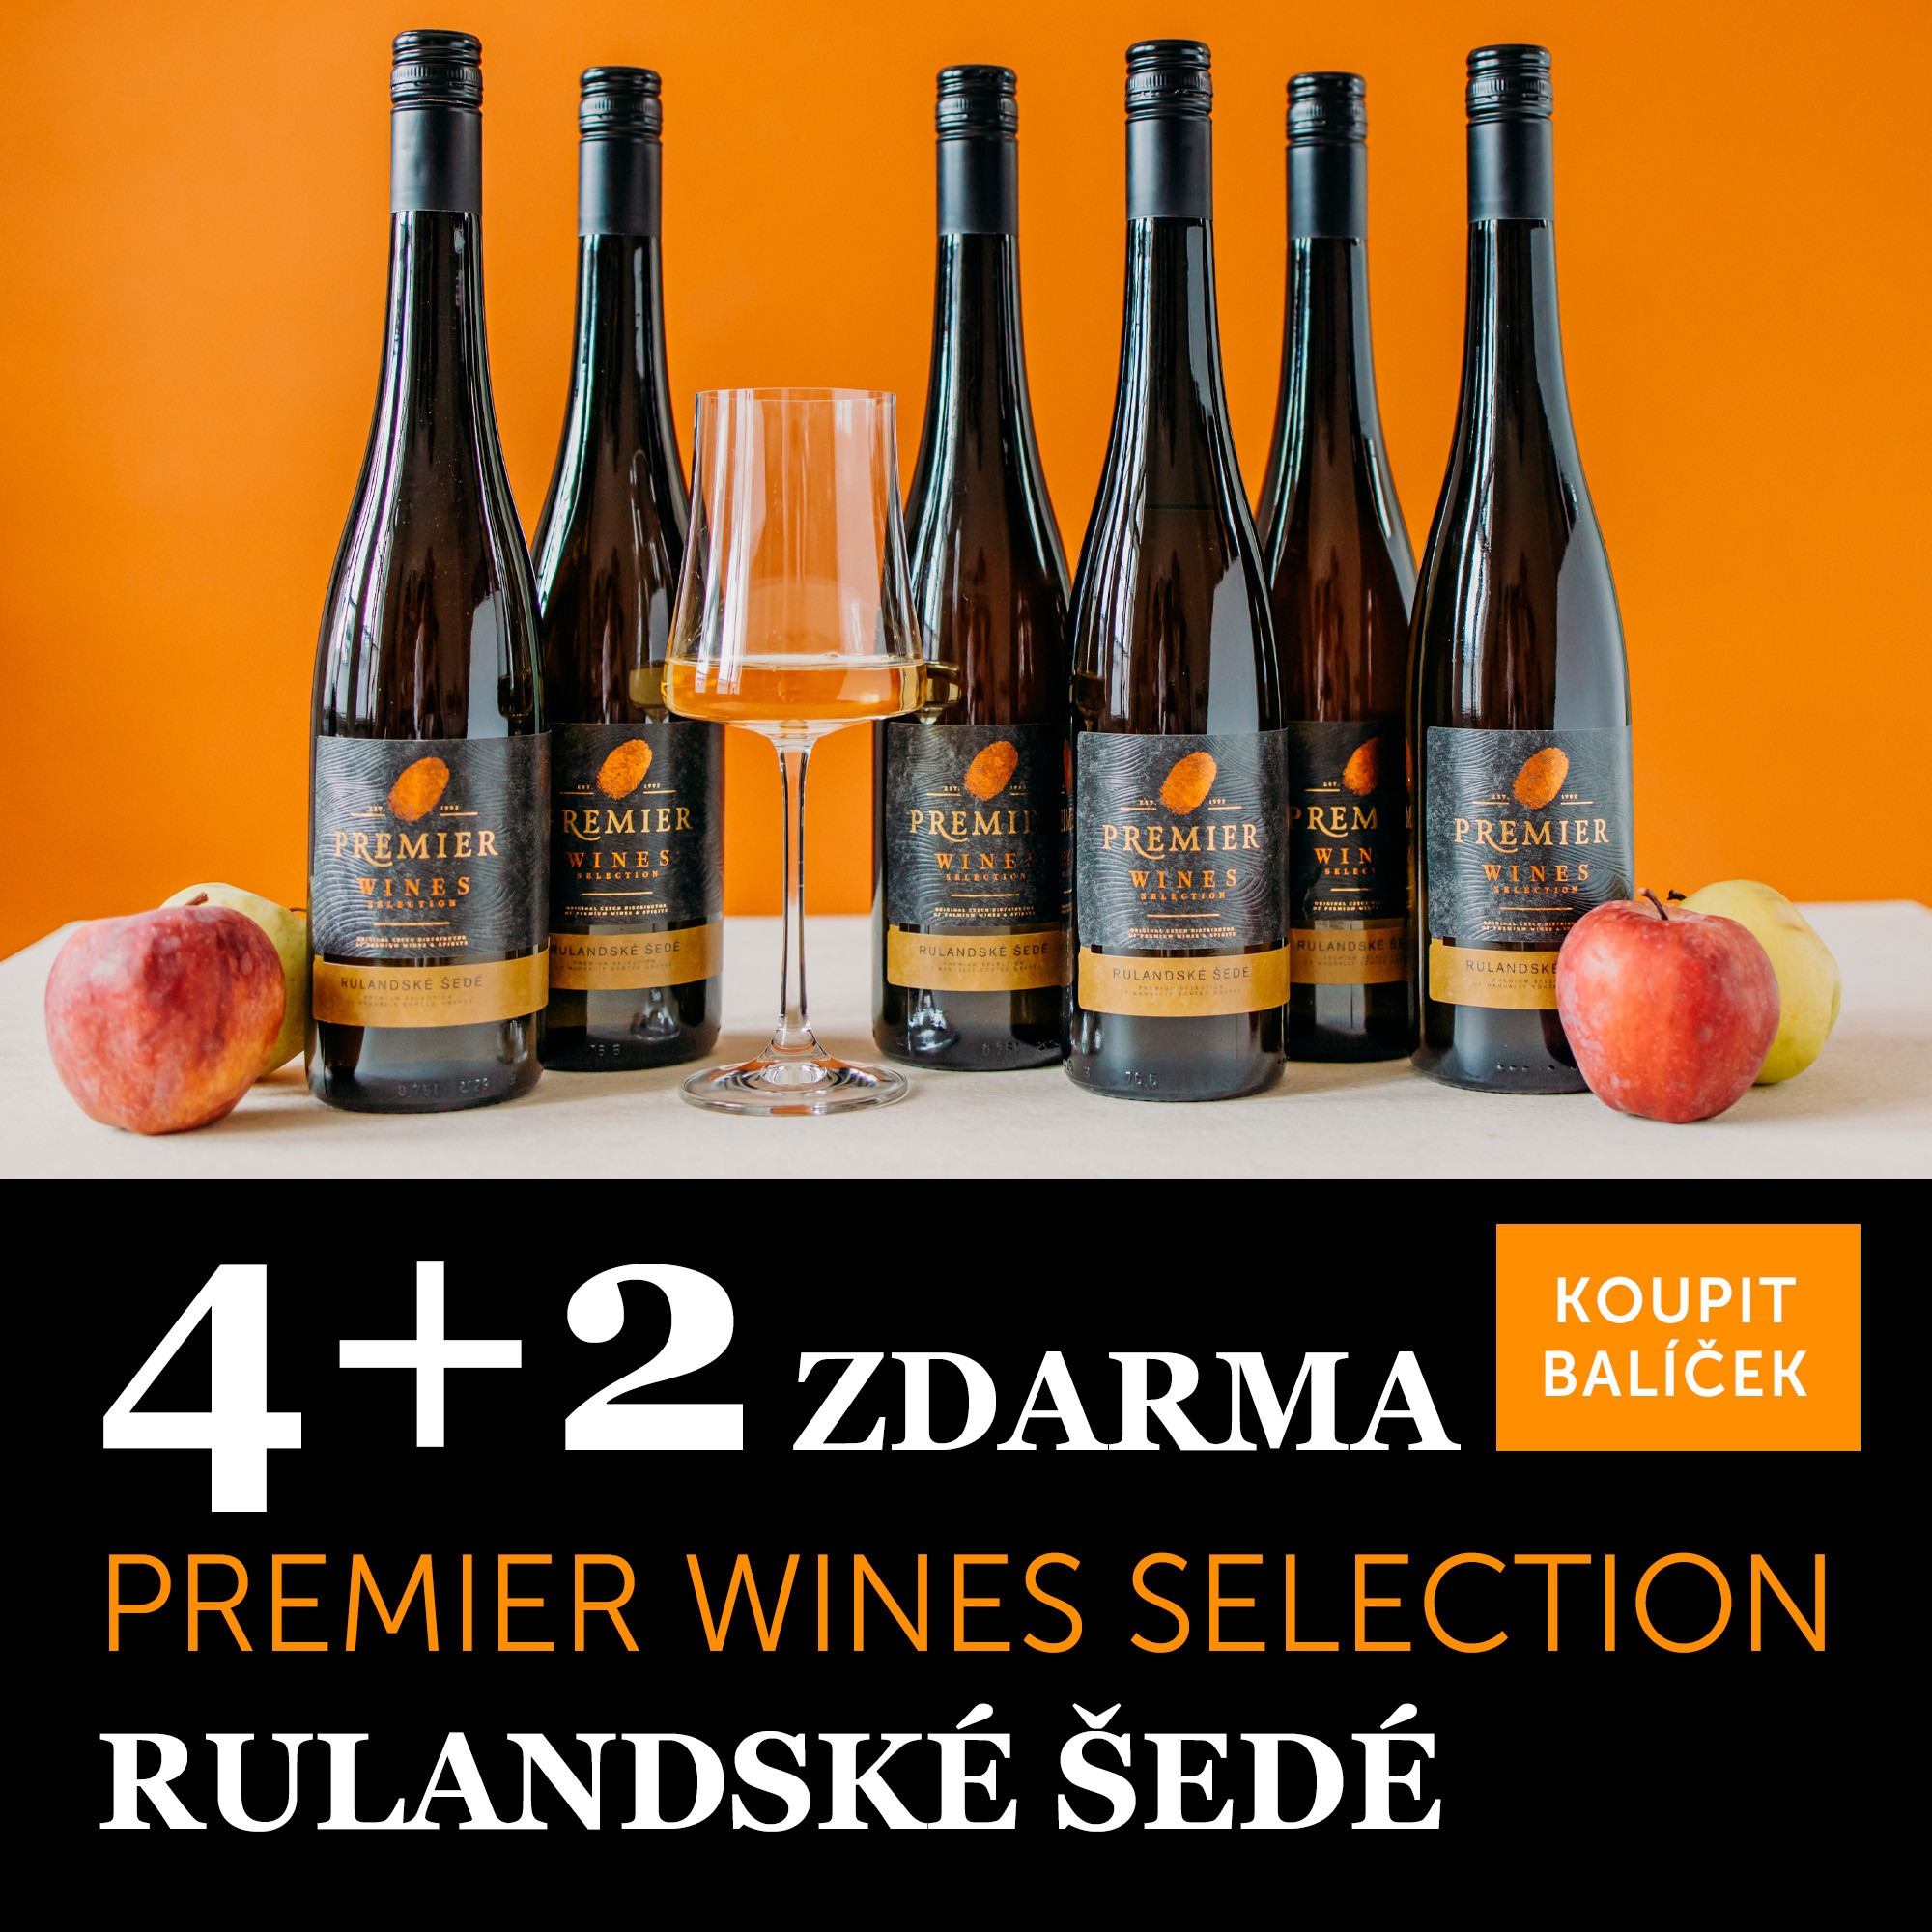 Premier Wines Selection Rulandské šedé 2021 4+2 zdarma - UKONČENO